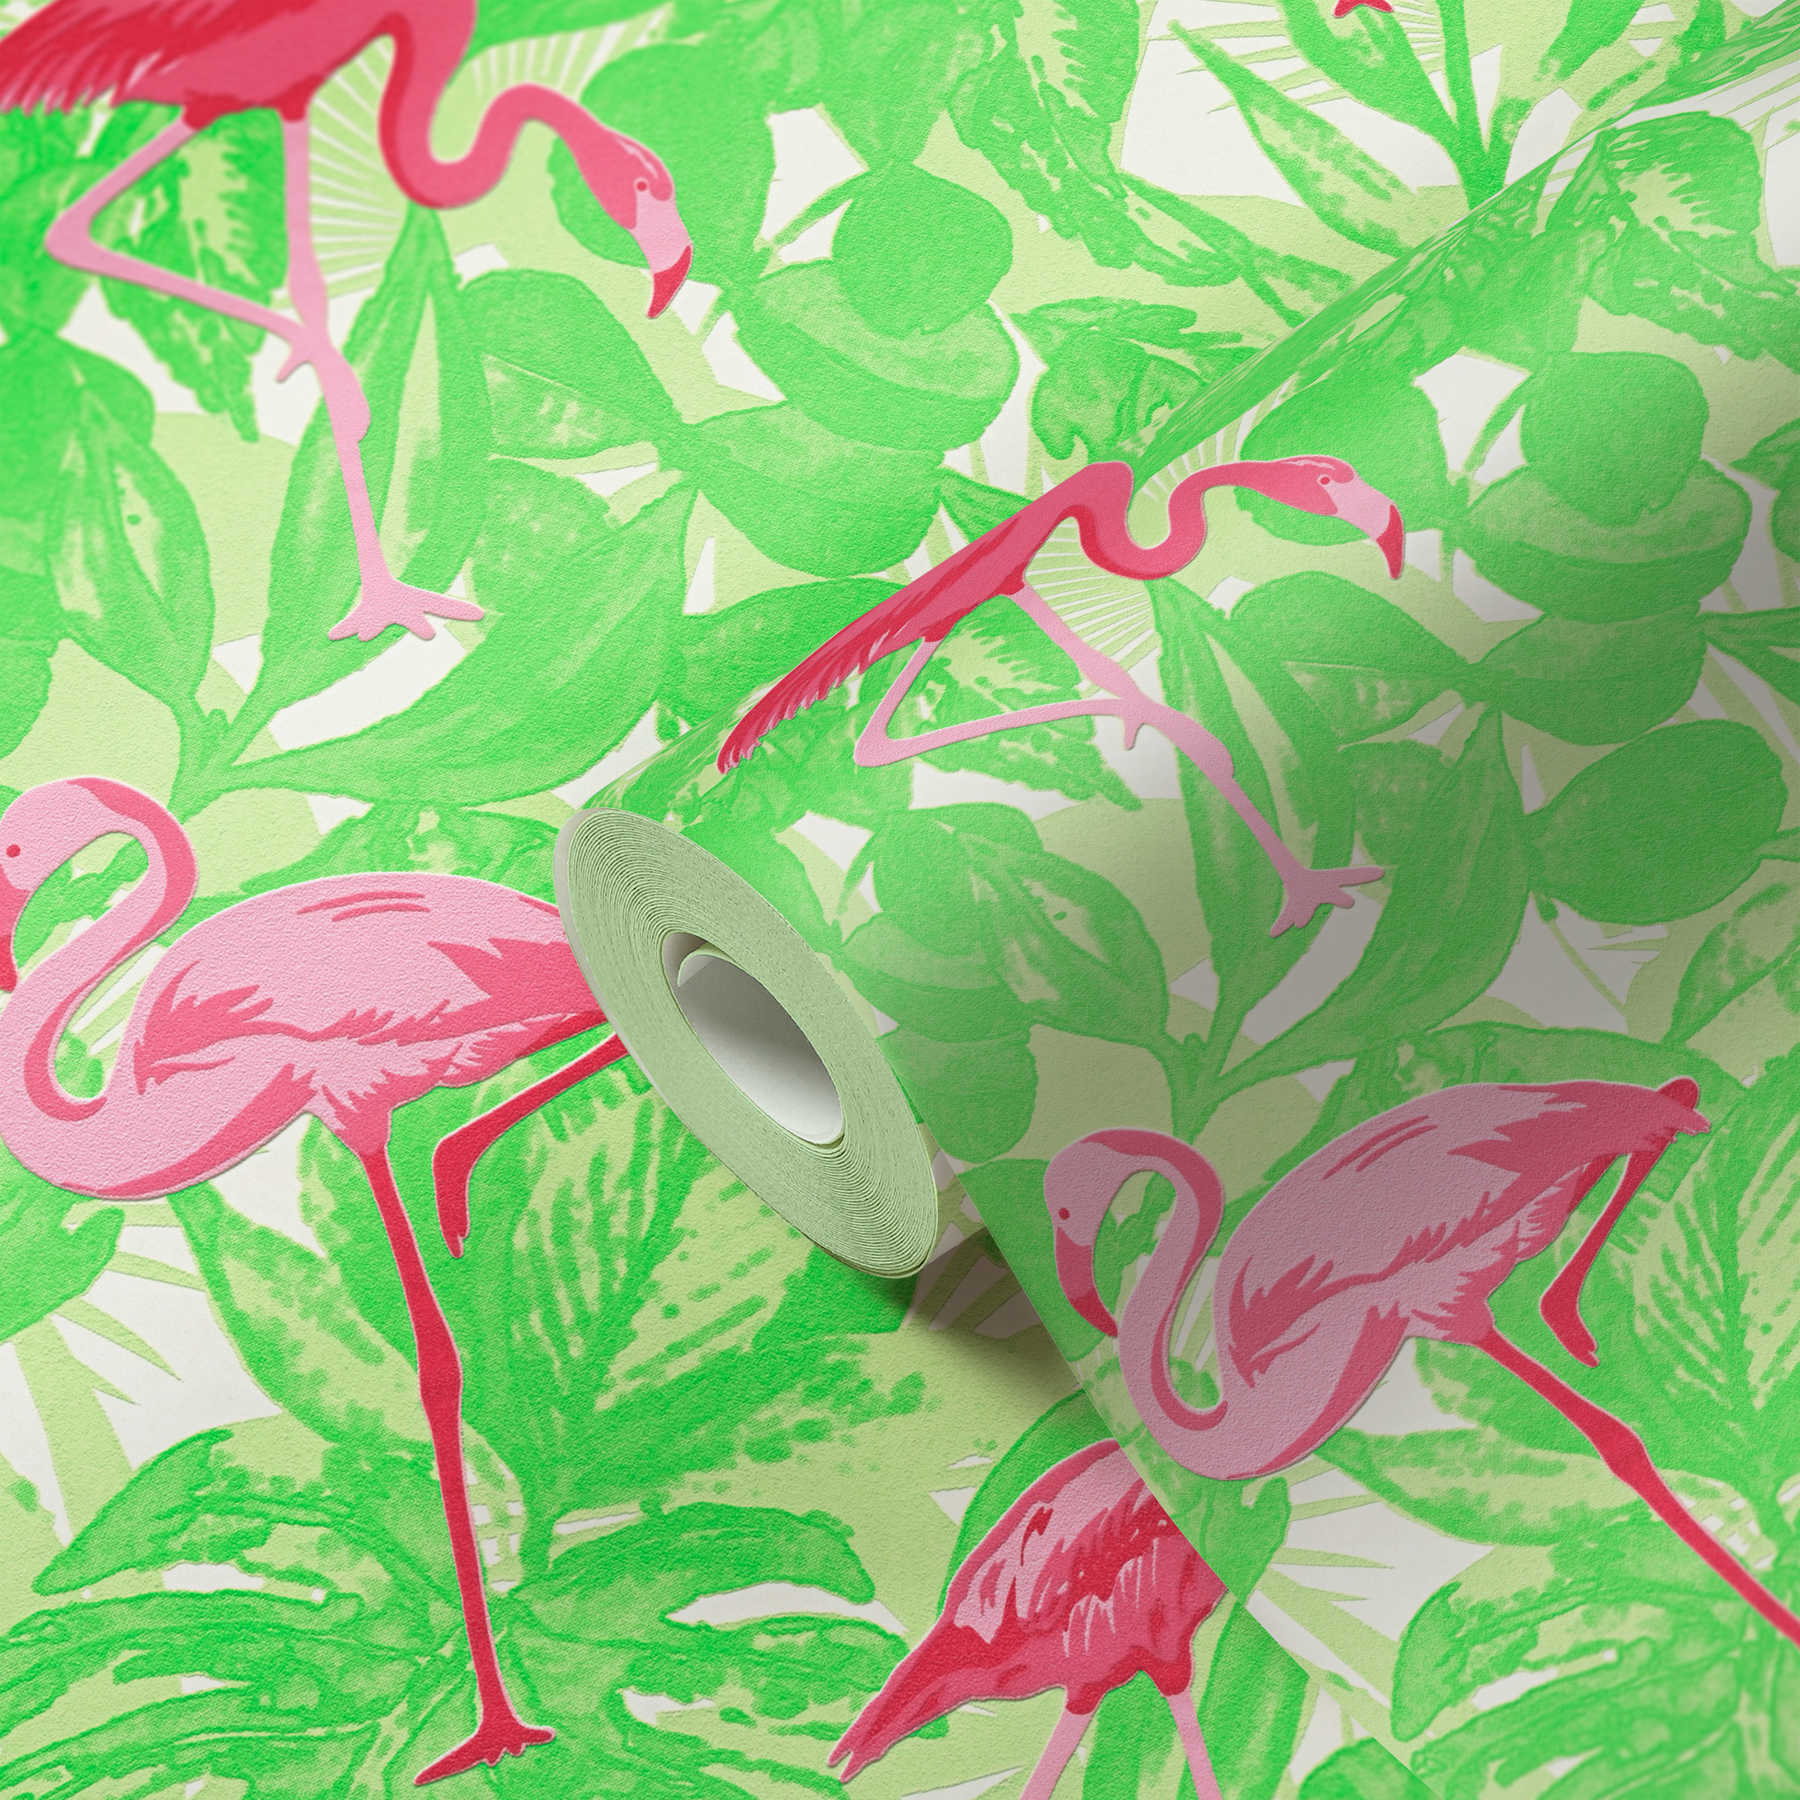             Papel pintado tropical con flamencos y hojas - rosa, verde
        